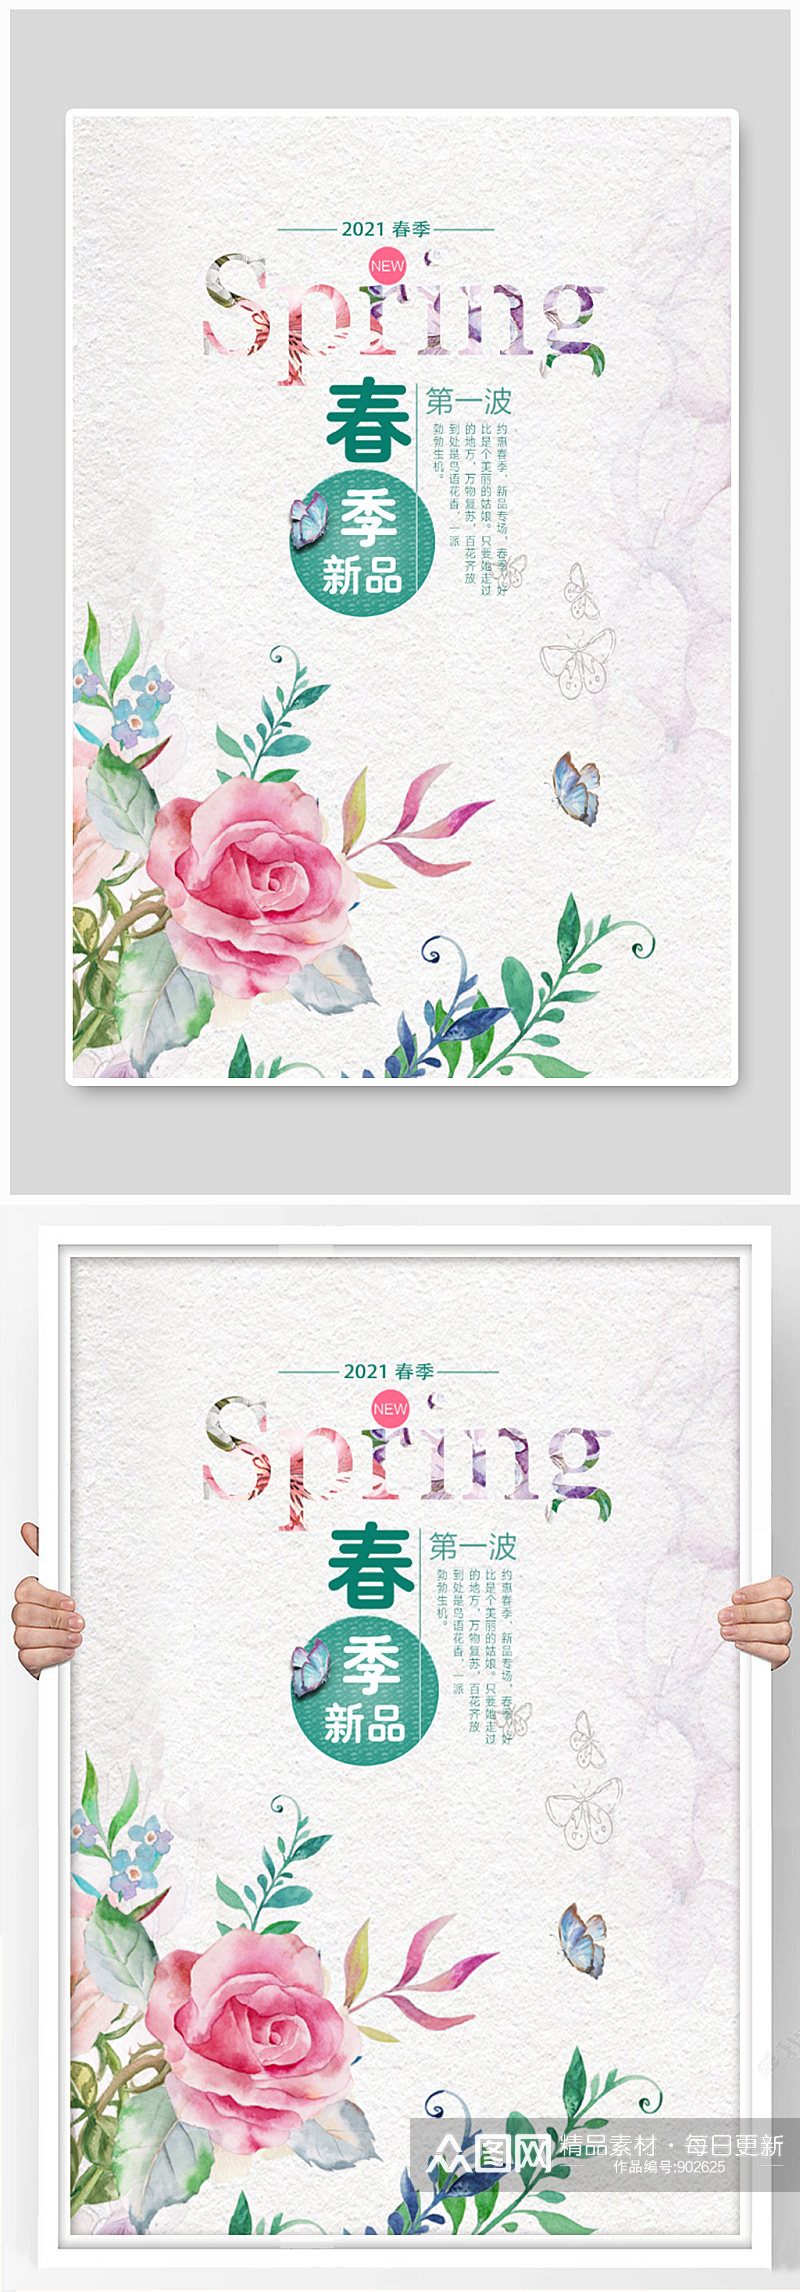 春季新品春季促销宣传海报设计素材